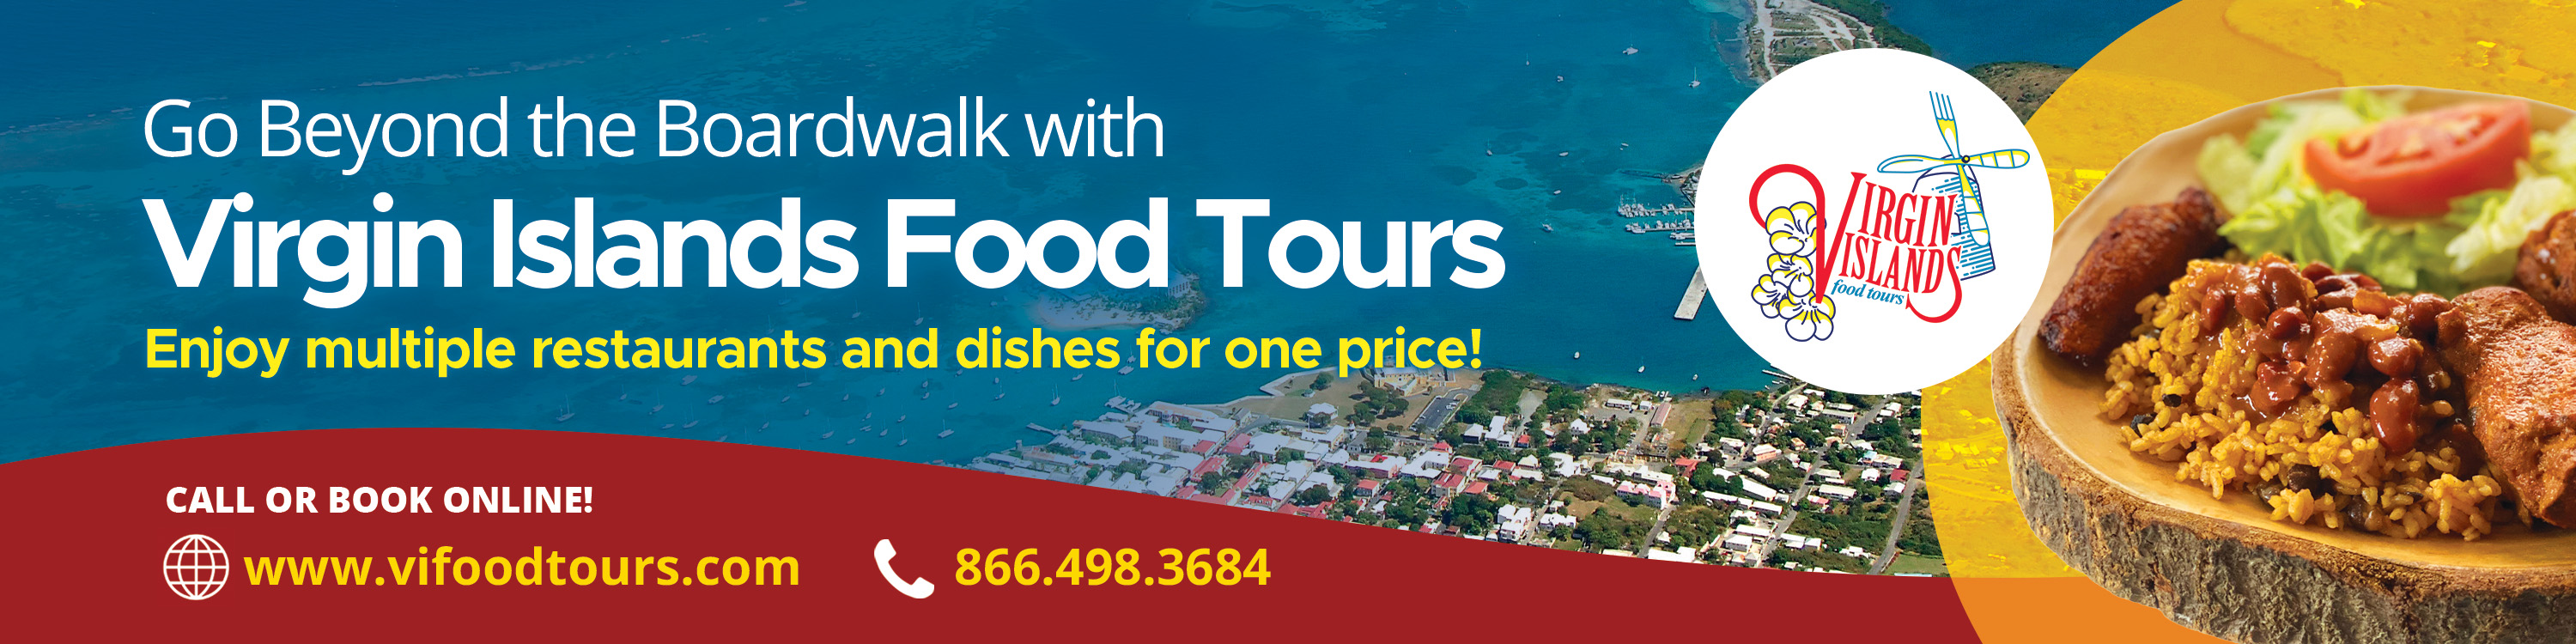 Virgin Islands Food Tours